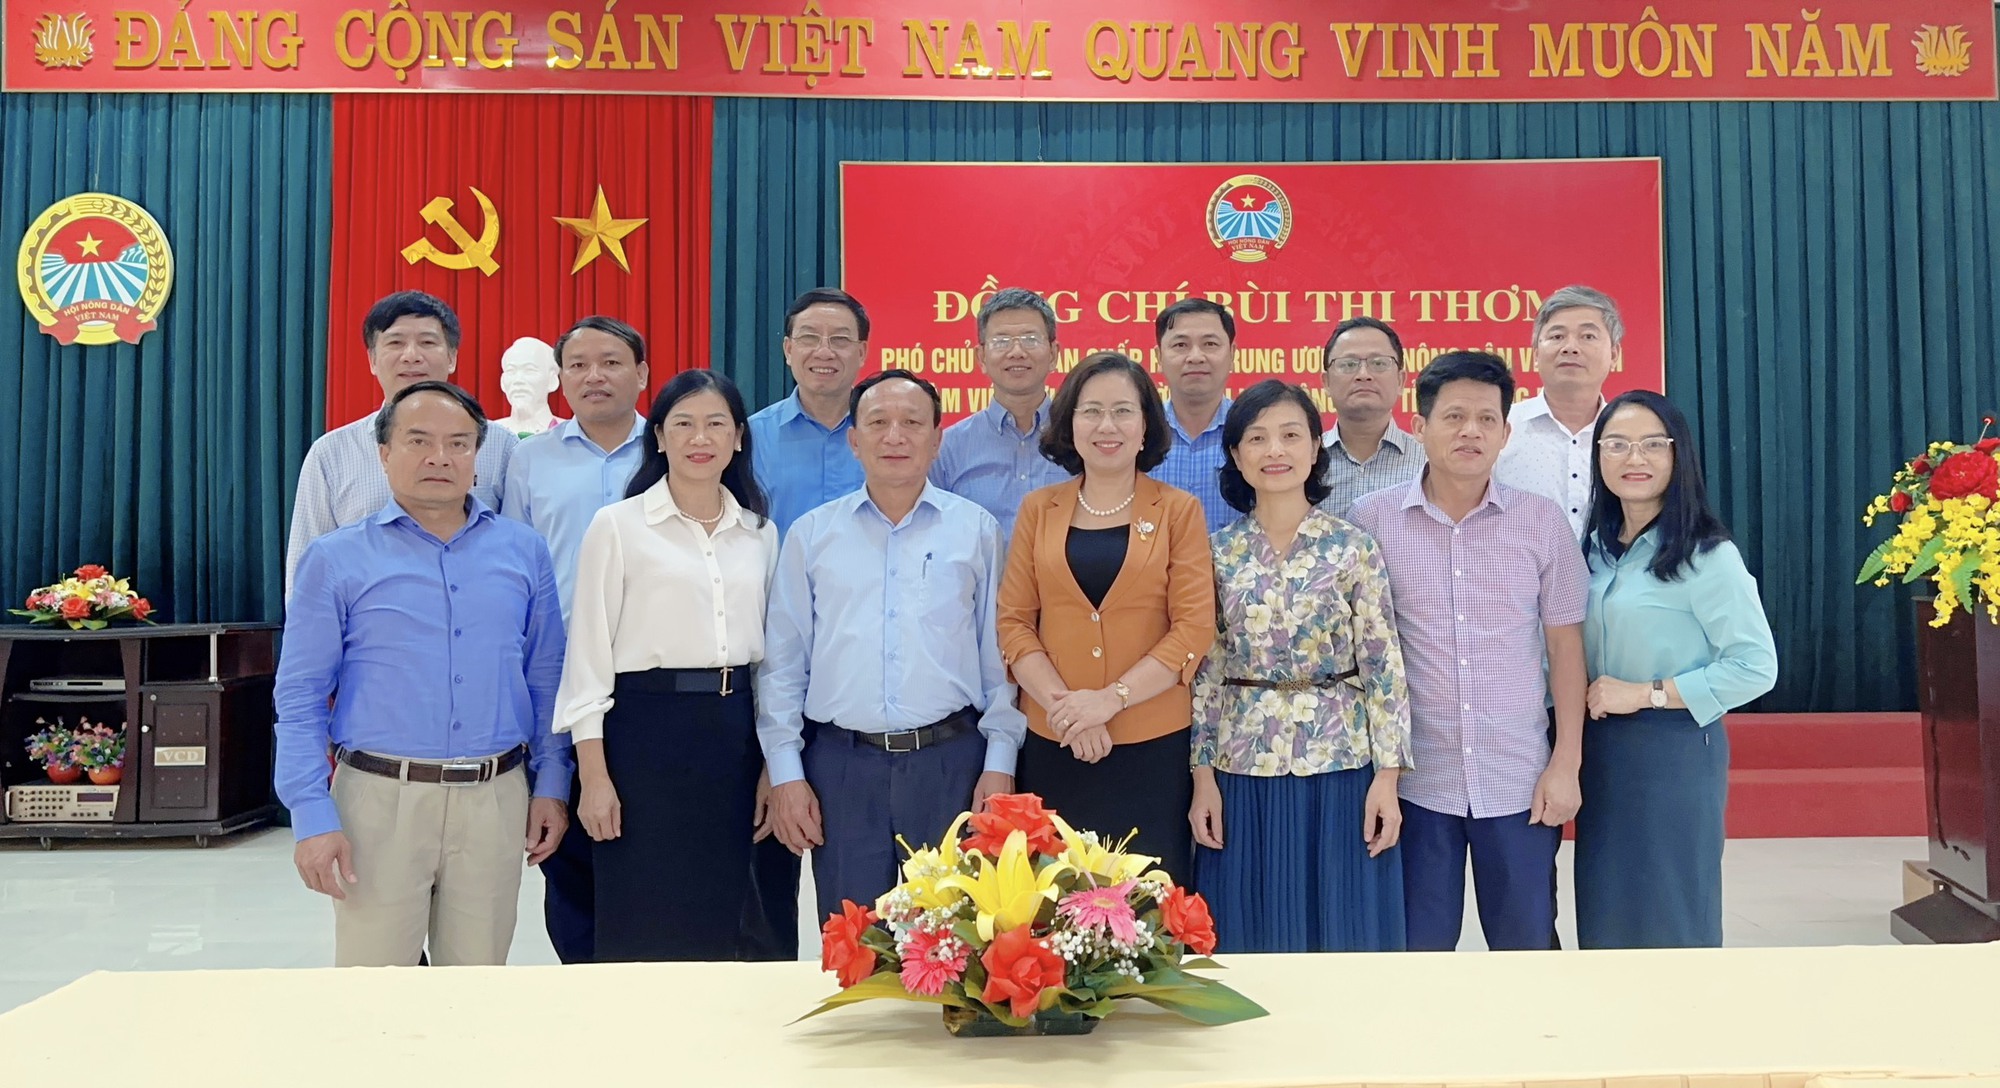 PCT TƯ Hội NDVN Bùi Thị Thơm: Các cấp Hội tại Quảng Bình thực hiện tốt công tác chuẩn bị, tổ chức Đại hội - Ảnh 5.